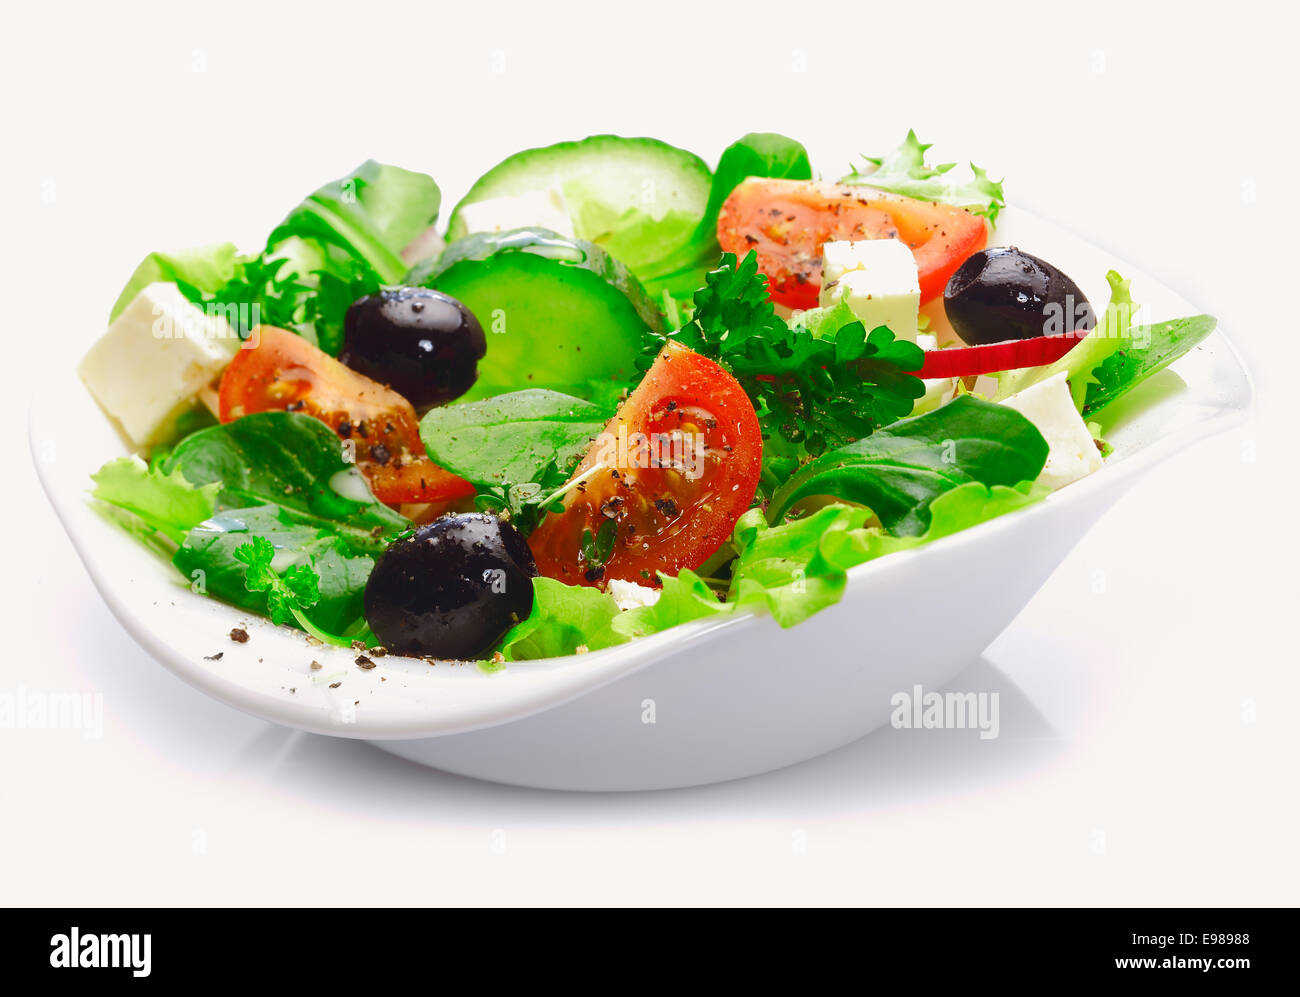 Cada lado sirviendo de deliciosos platos de ensalada griega con queso feta, aceitunas, tomates y ensalada de verduras Foto de stock